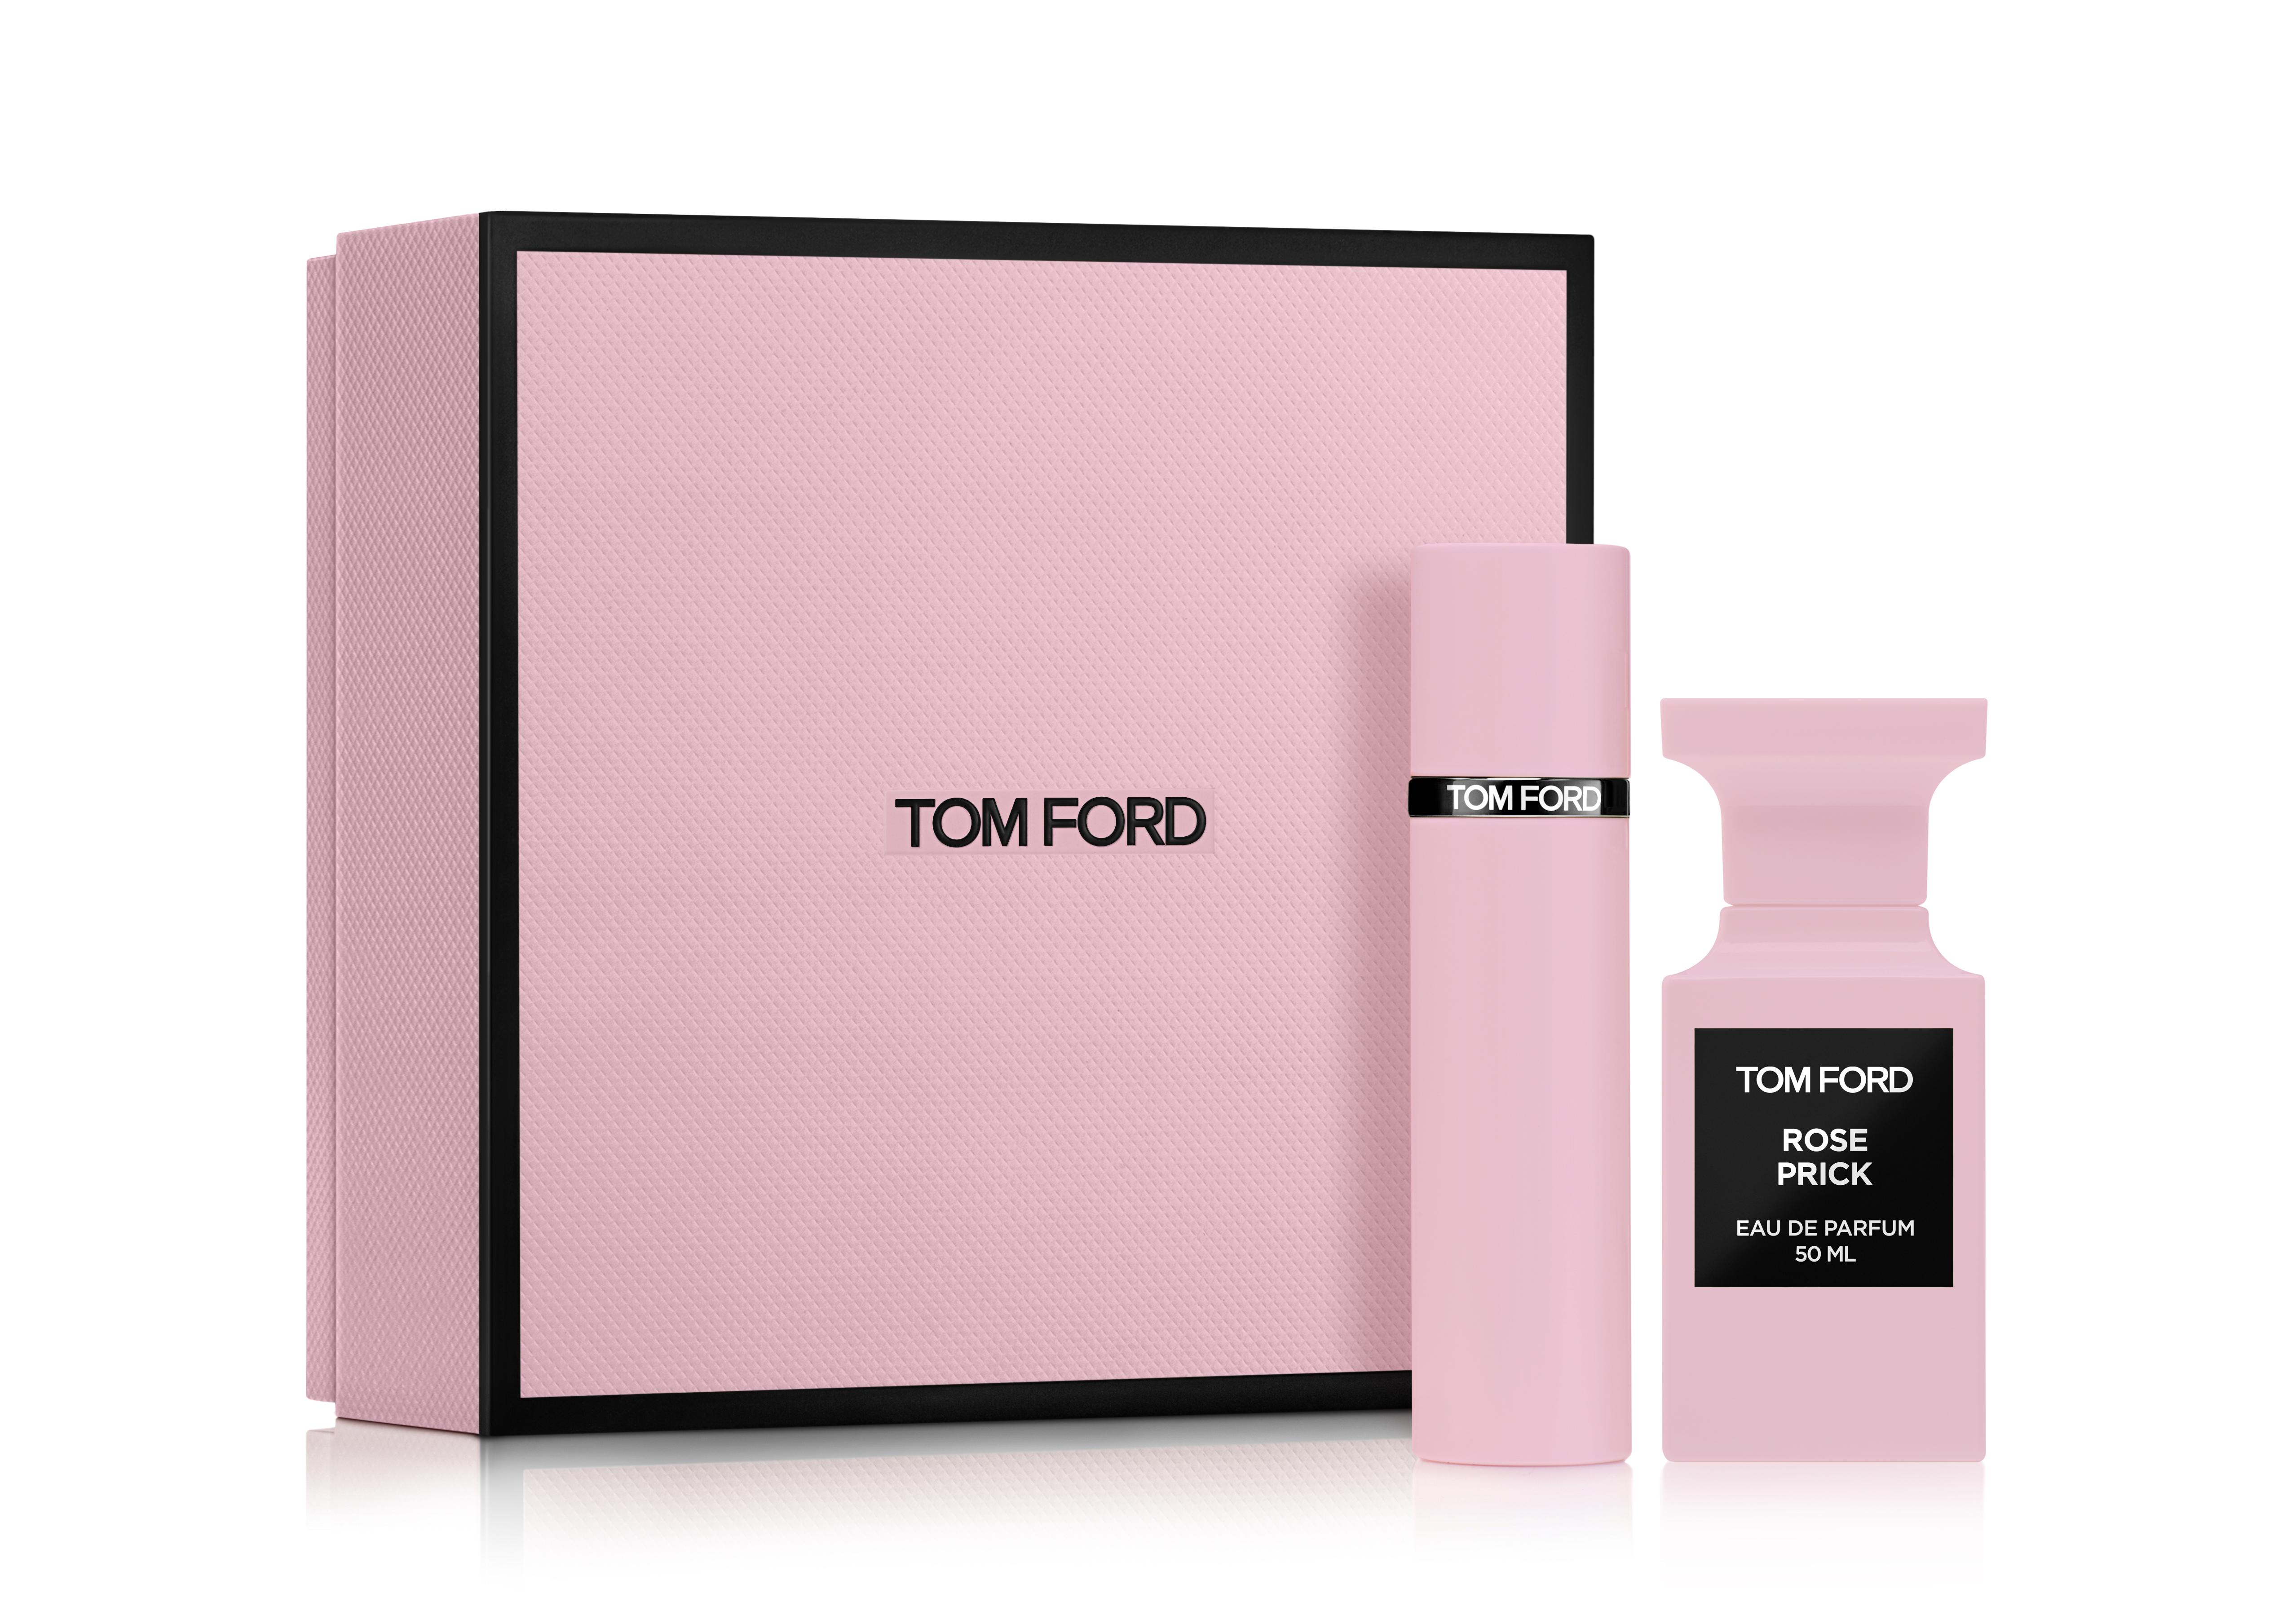 Tom Ford PRIVATE BLEND ROSE PRICK EAU DE PARFUM SET WITH ATOMIZER | TomFord .com